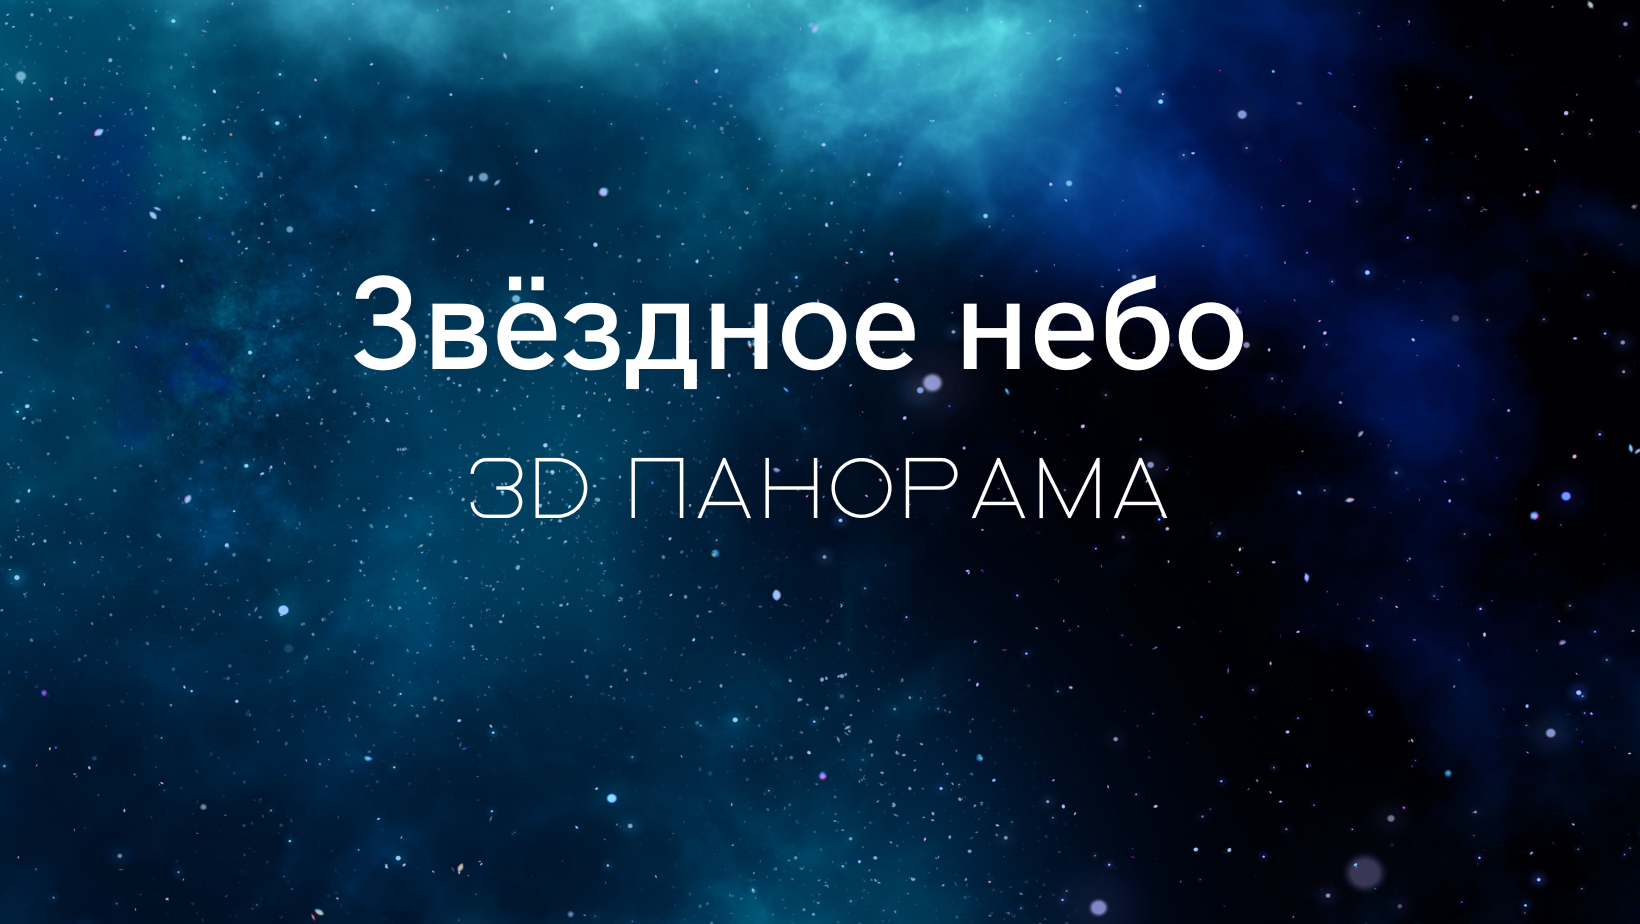 Купить обои Обои Звёздное небо в интернет-магазине в Москве от  производителя Designecoprint